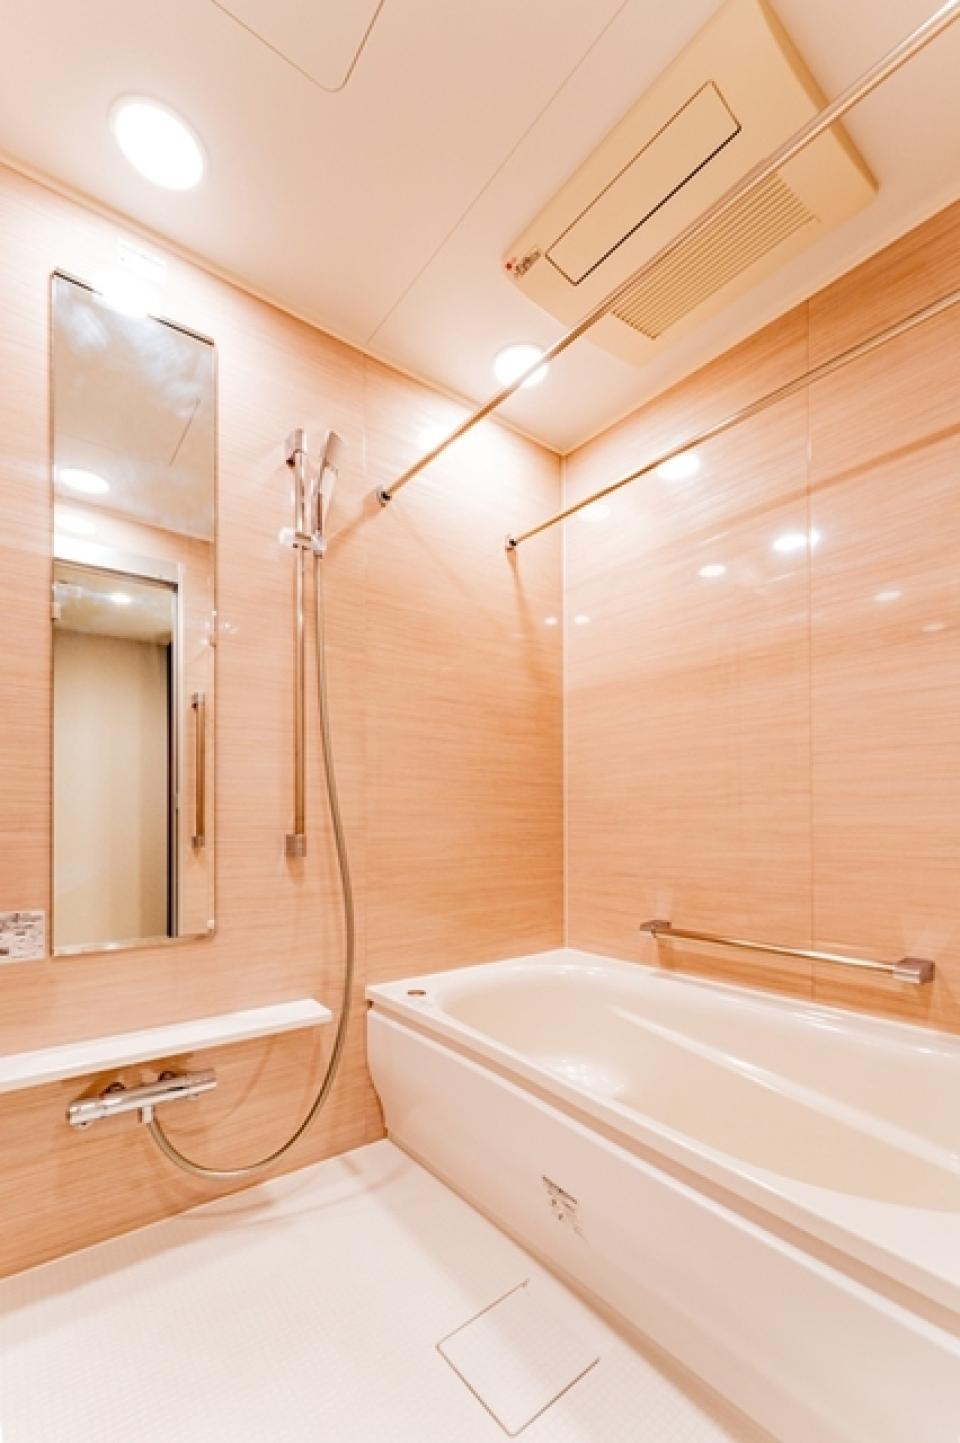 ナチュラルなパネルが導入された浴室です。※写真は同タイプ住戸です。